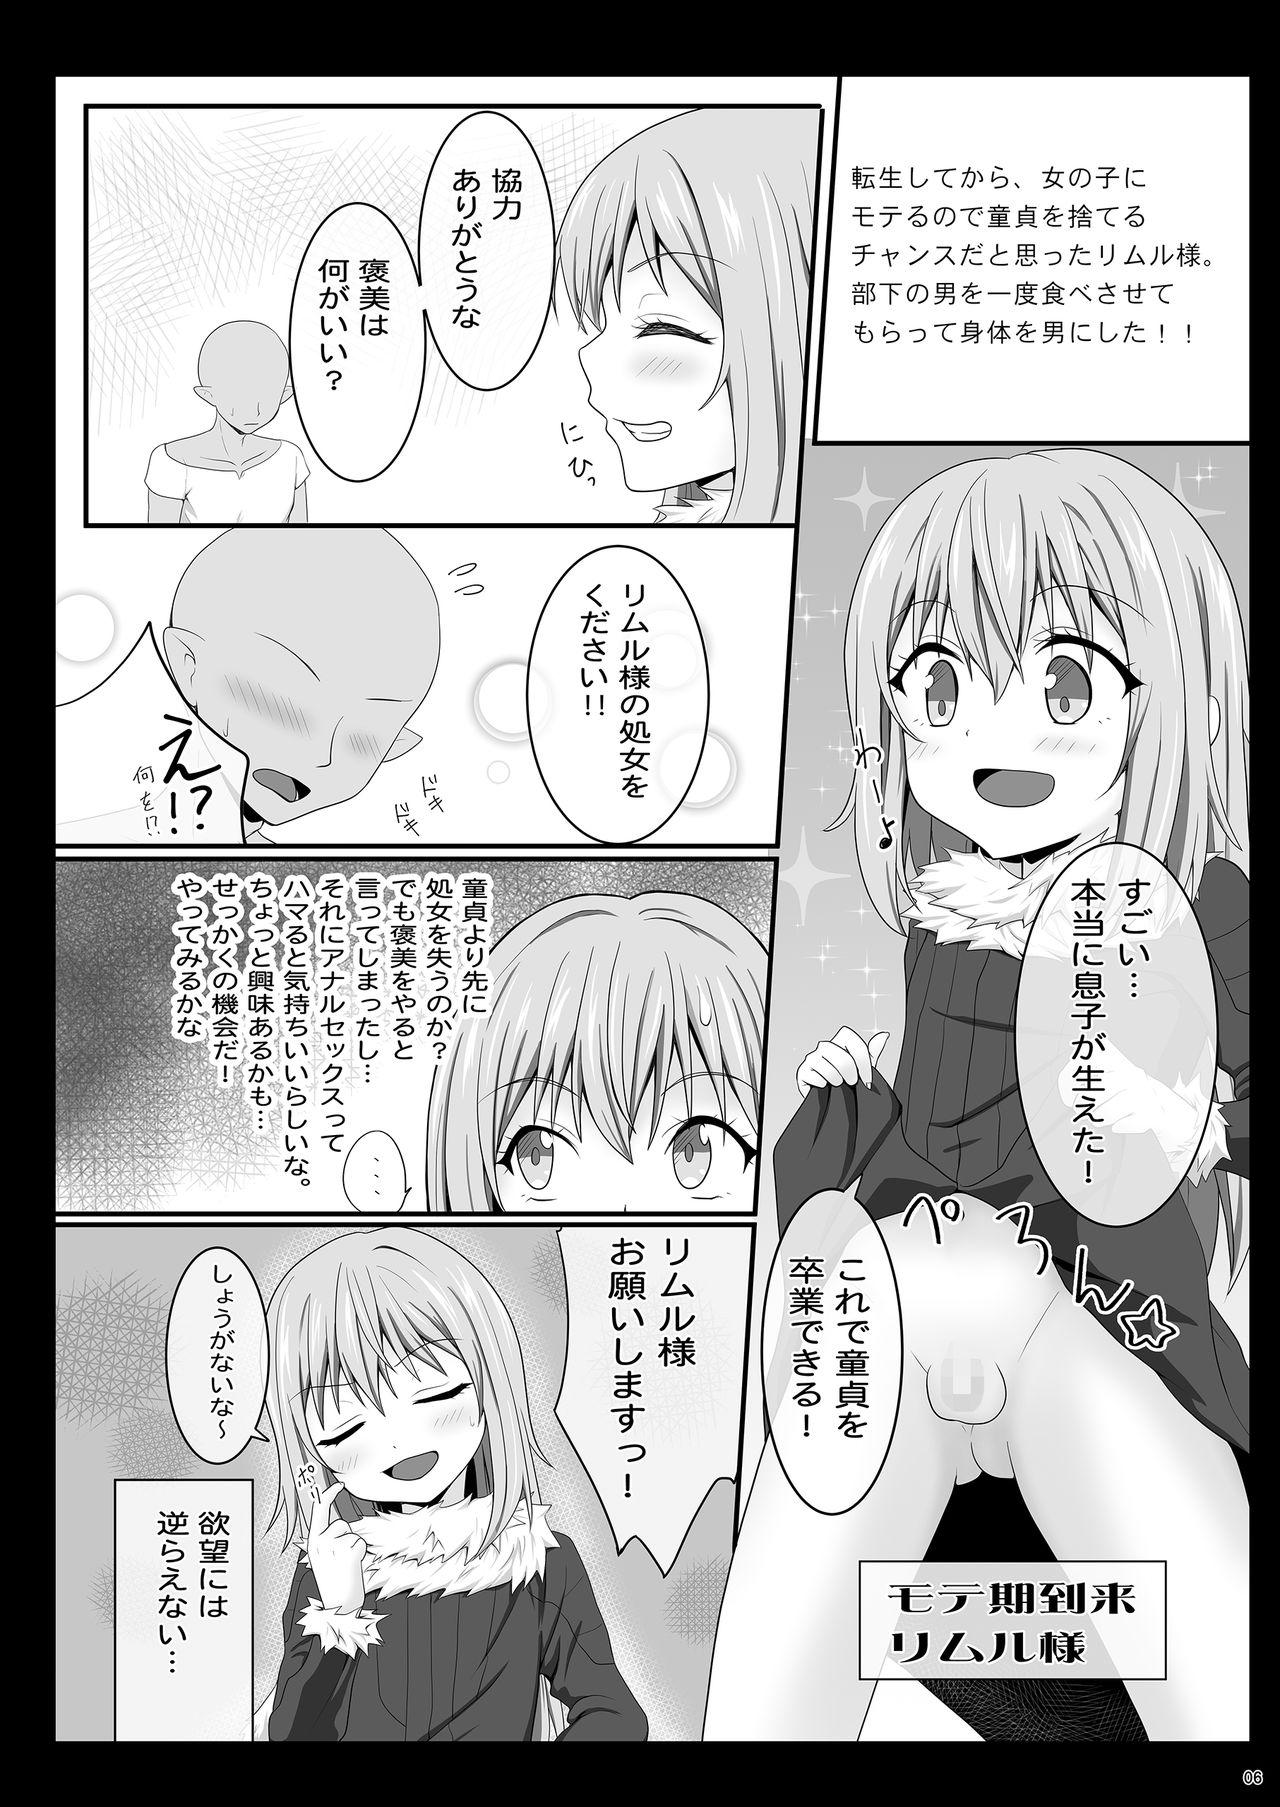 Teamskeet Etchina Rimuru-sama No Matome - Tensei shitara slime datta ken Bisex - Page 5